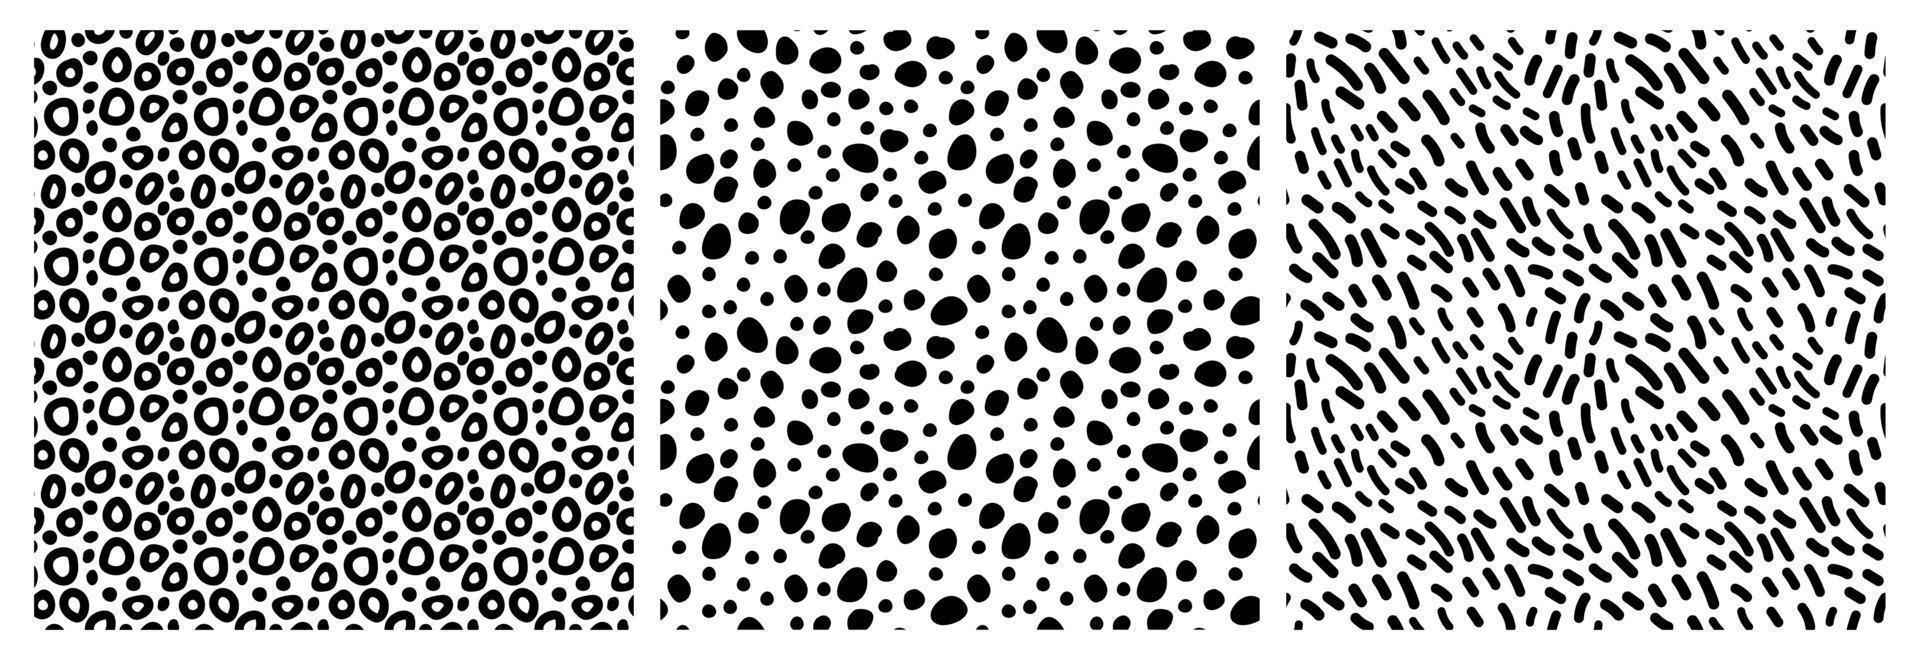 conjunto de patrones sin fisuras abstractos monocromos de burbujas, puntos, líneas dibujadas a mano. ilustración vectorial en blanco con círculos negros, formas de puntos vector